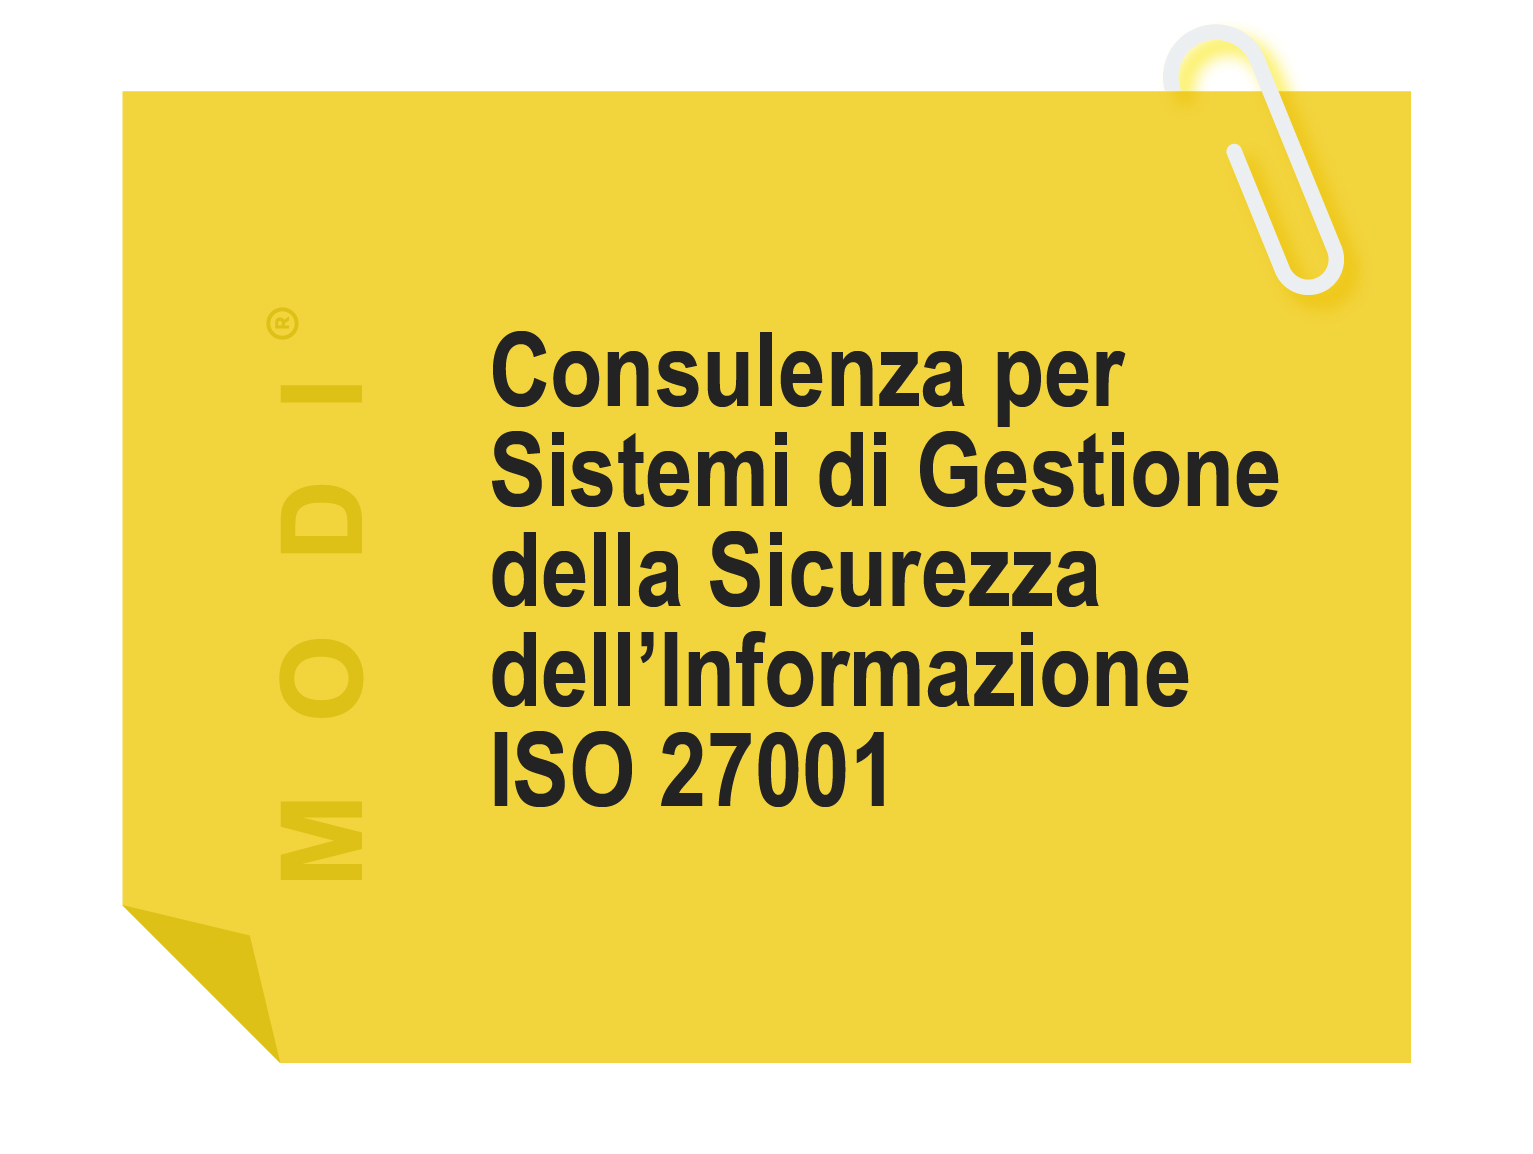 Modi SRL di Mestre Venezia - servizi e consulenze per le aziende